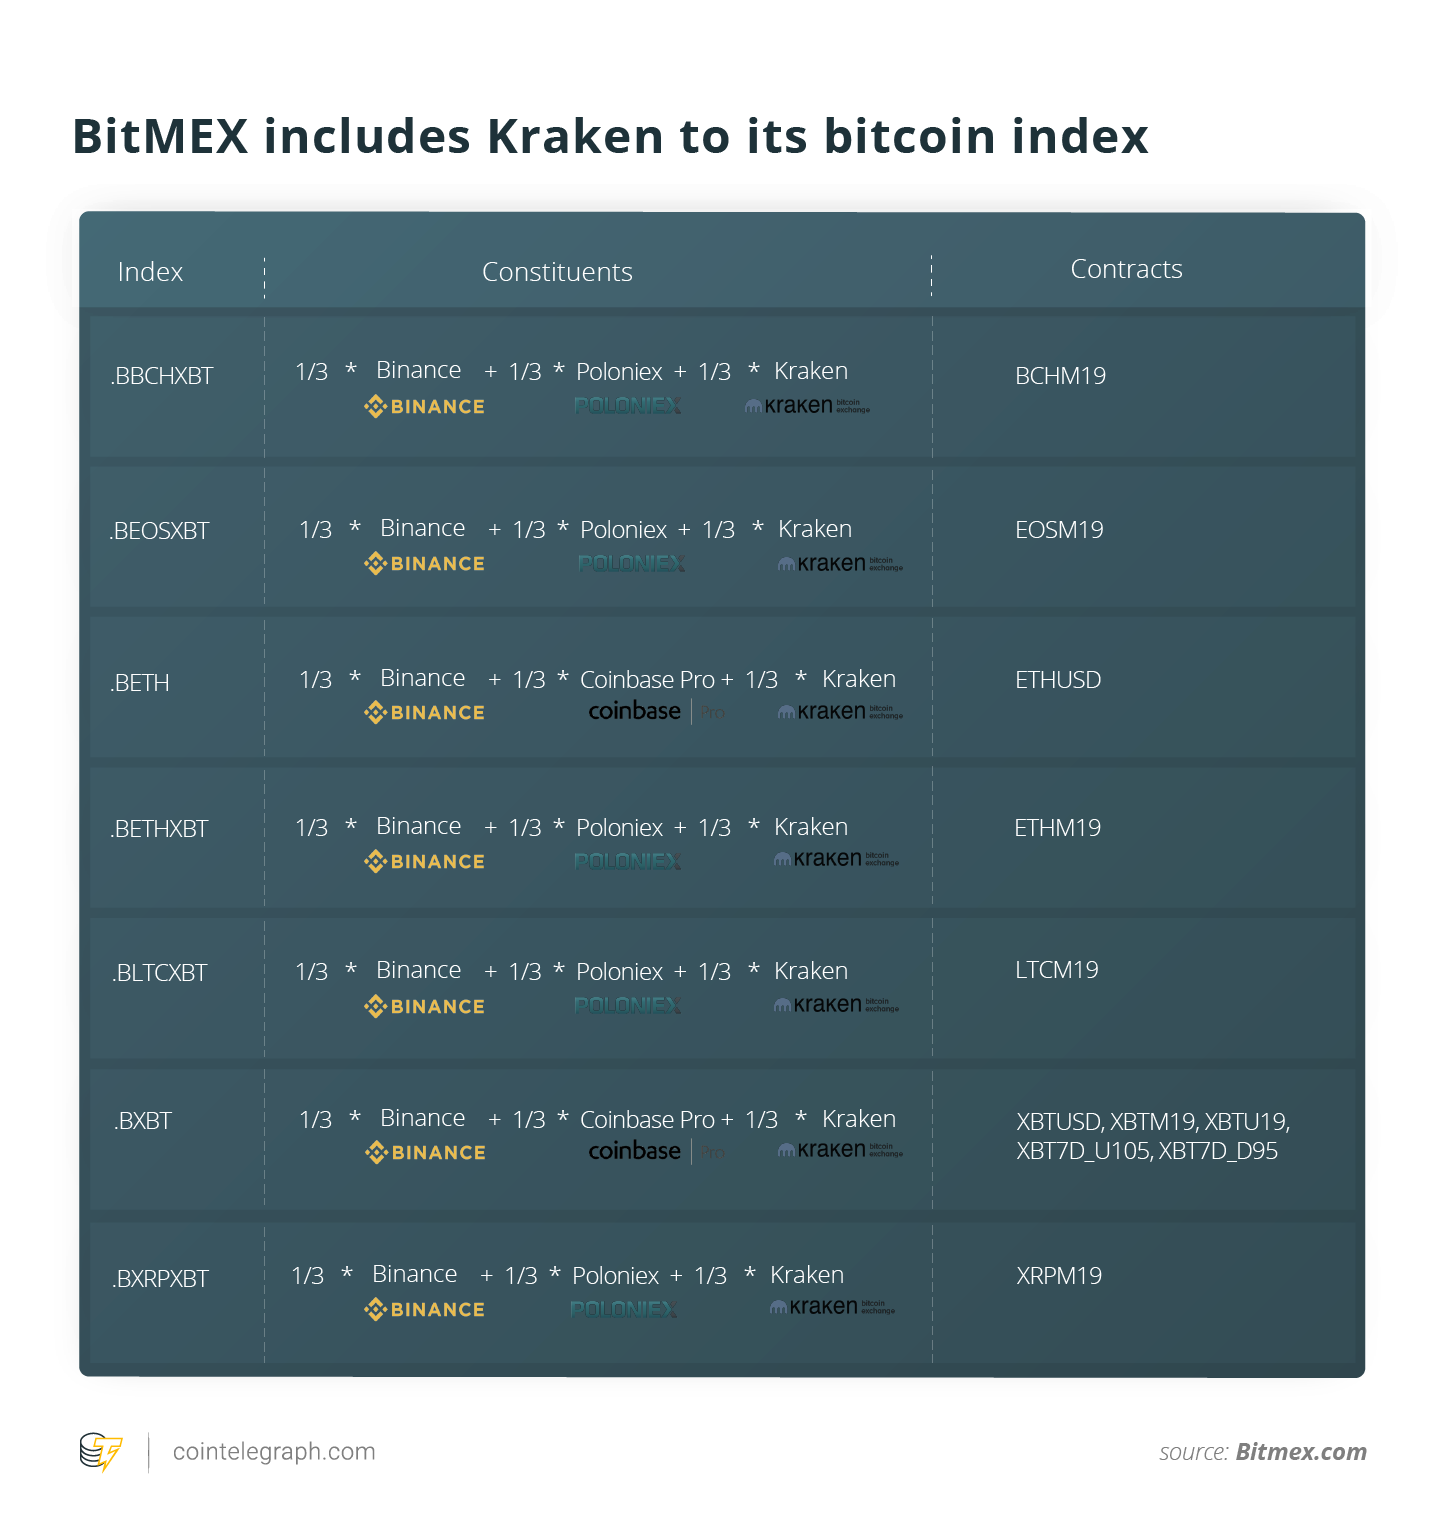 BitMEX includes Kraken to its bitcoin index